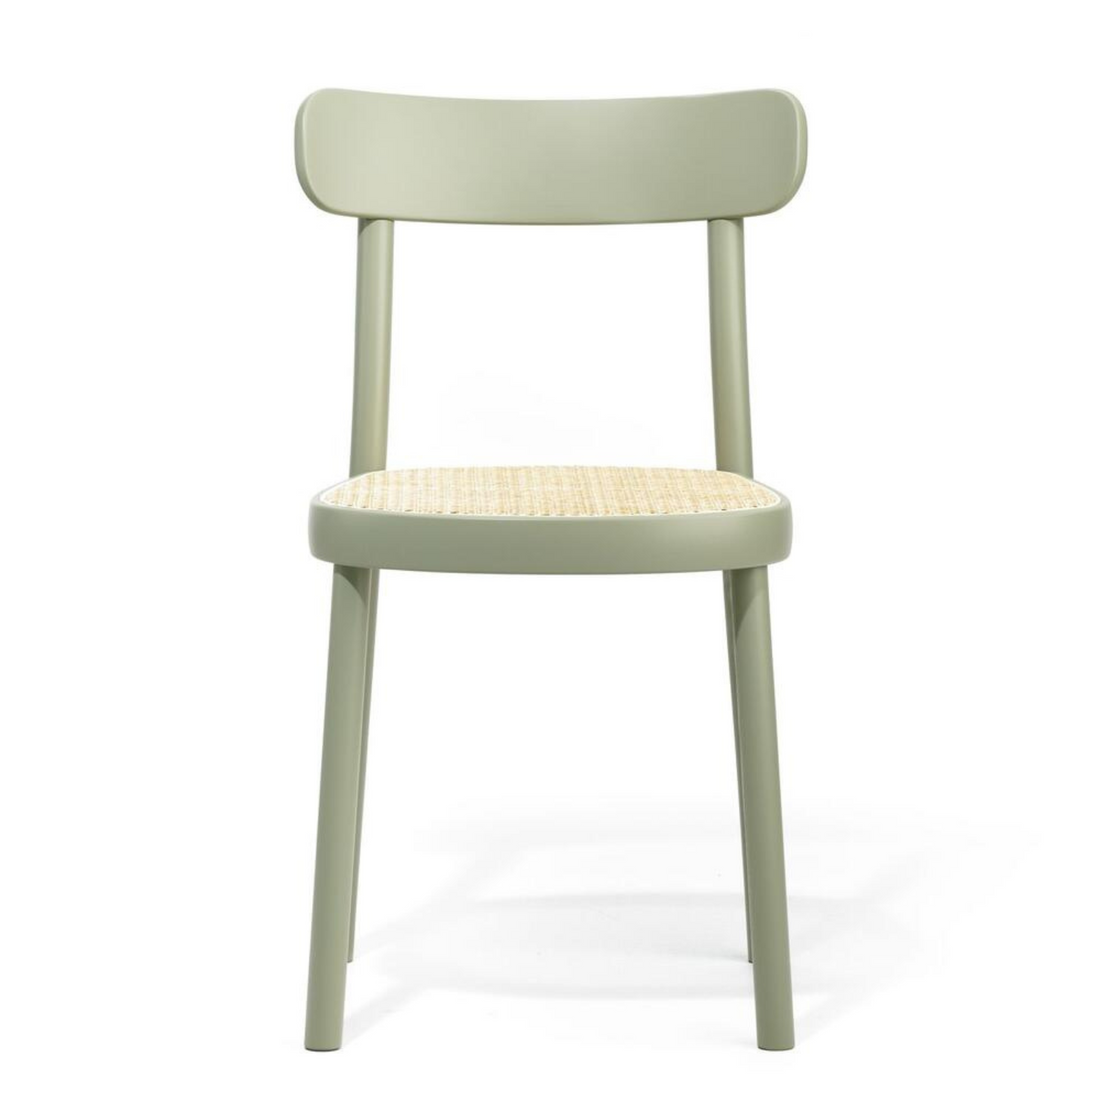 La Zitta | Chair - Cane